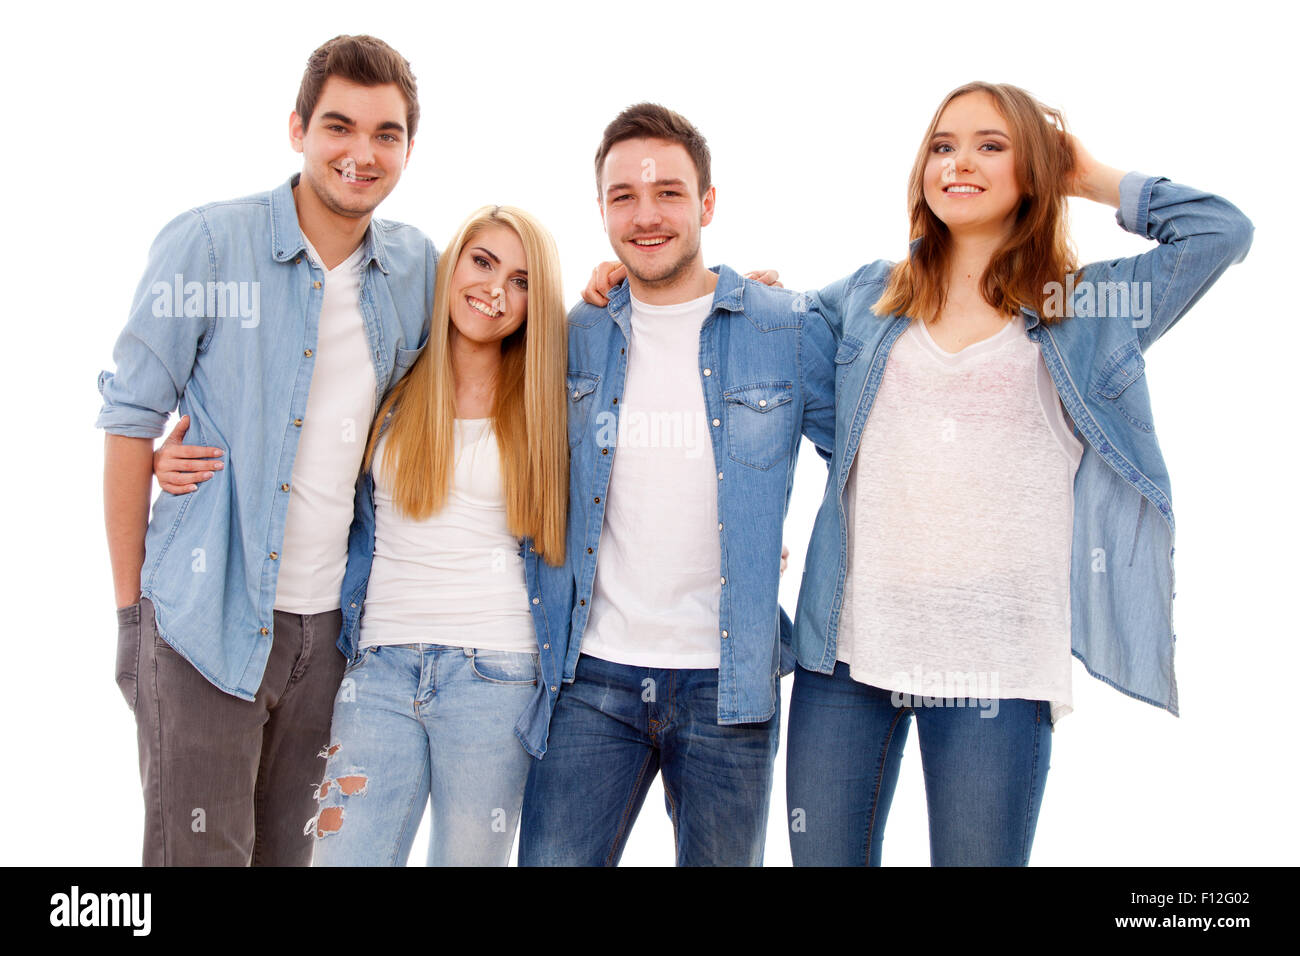 Gruppe von fröhlichen jungen Menschen Stockfoto